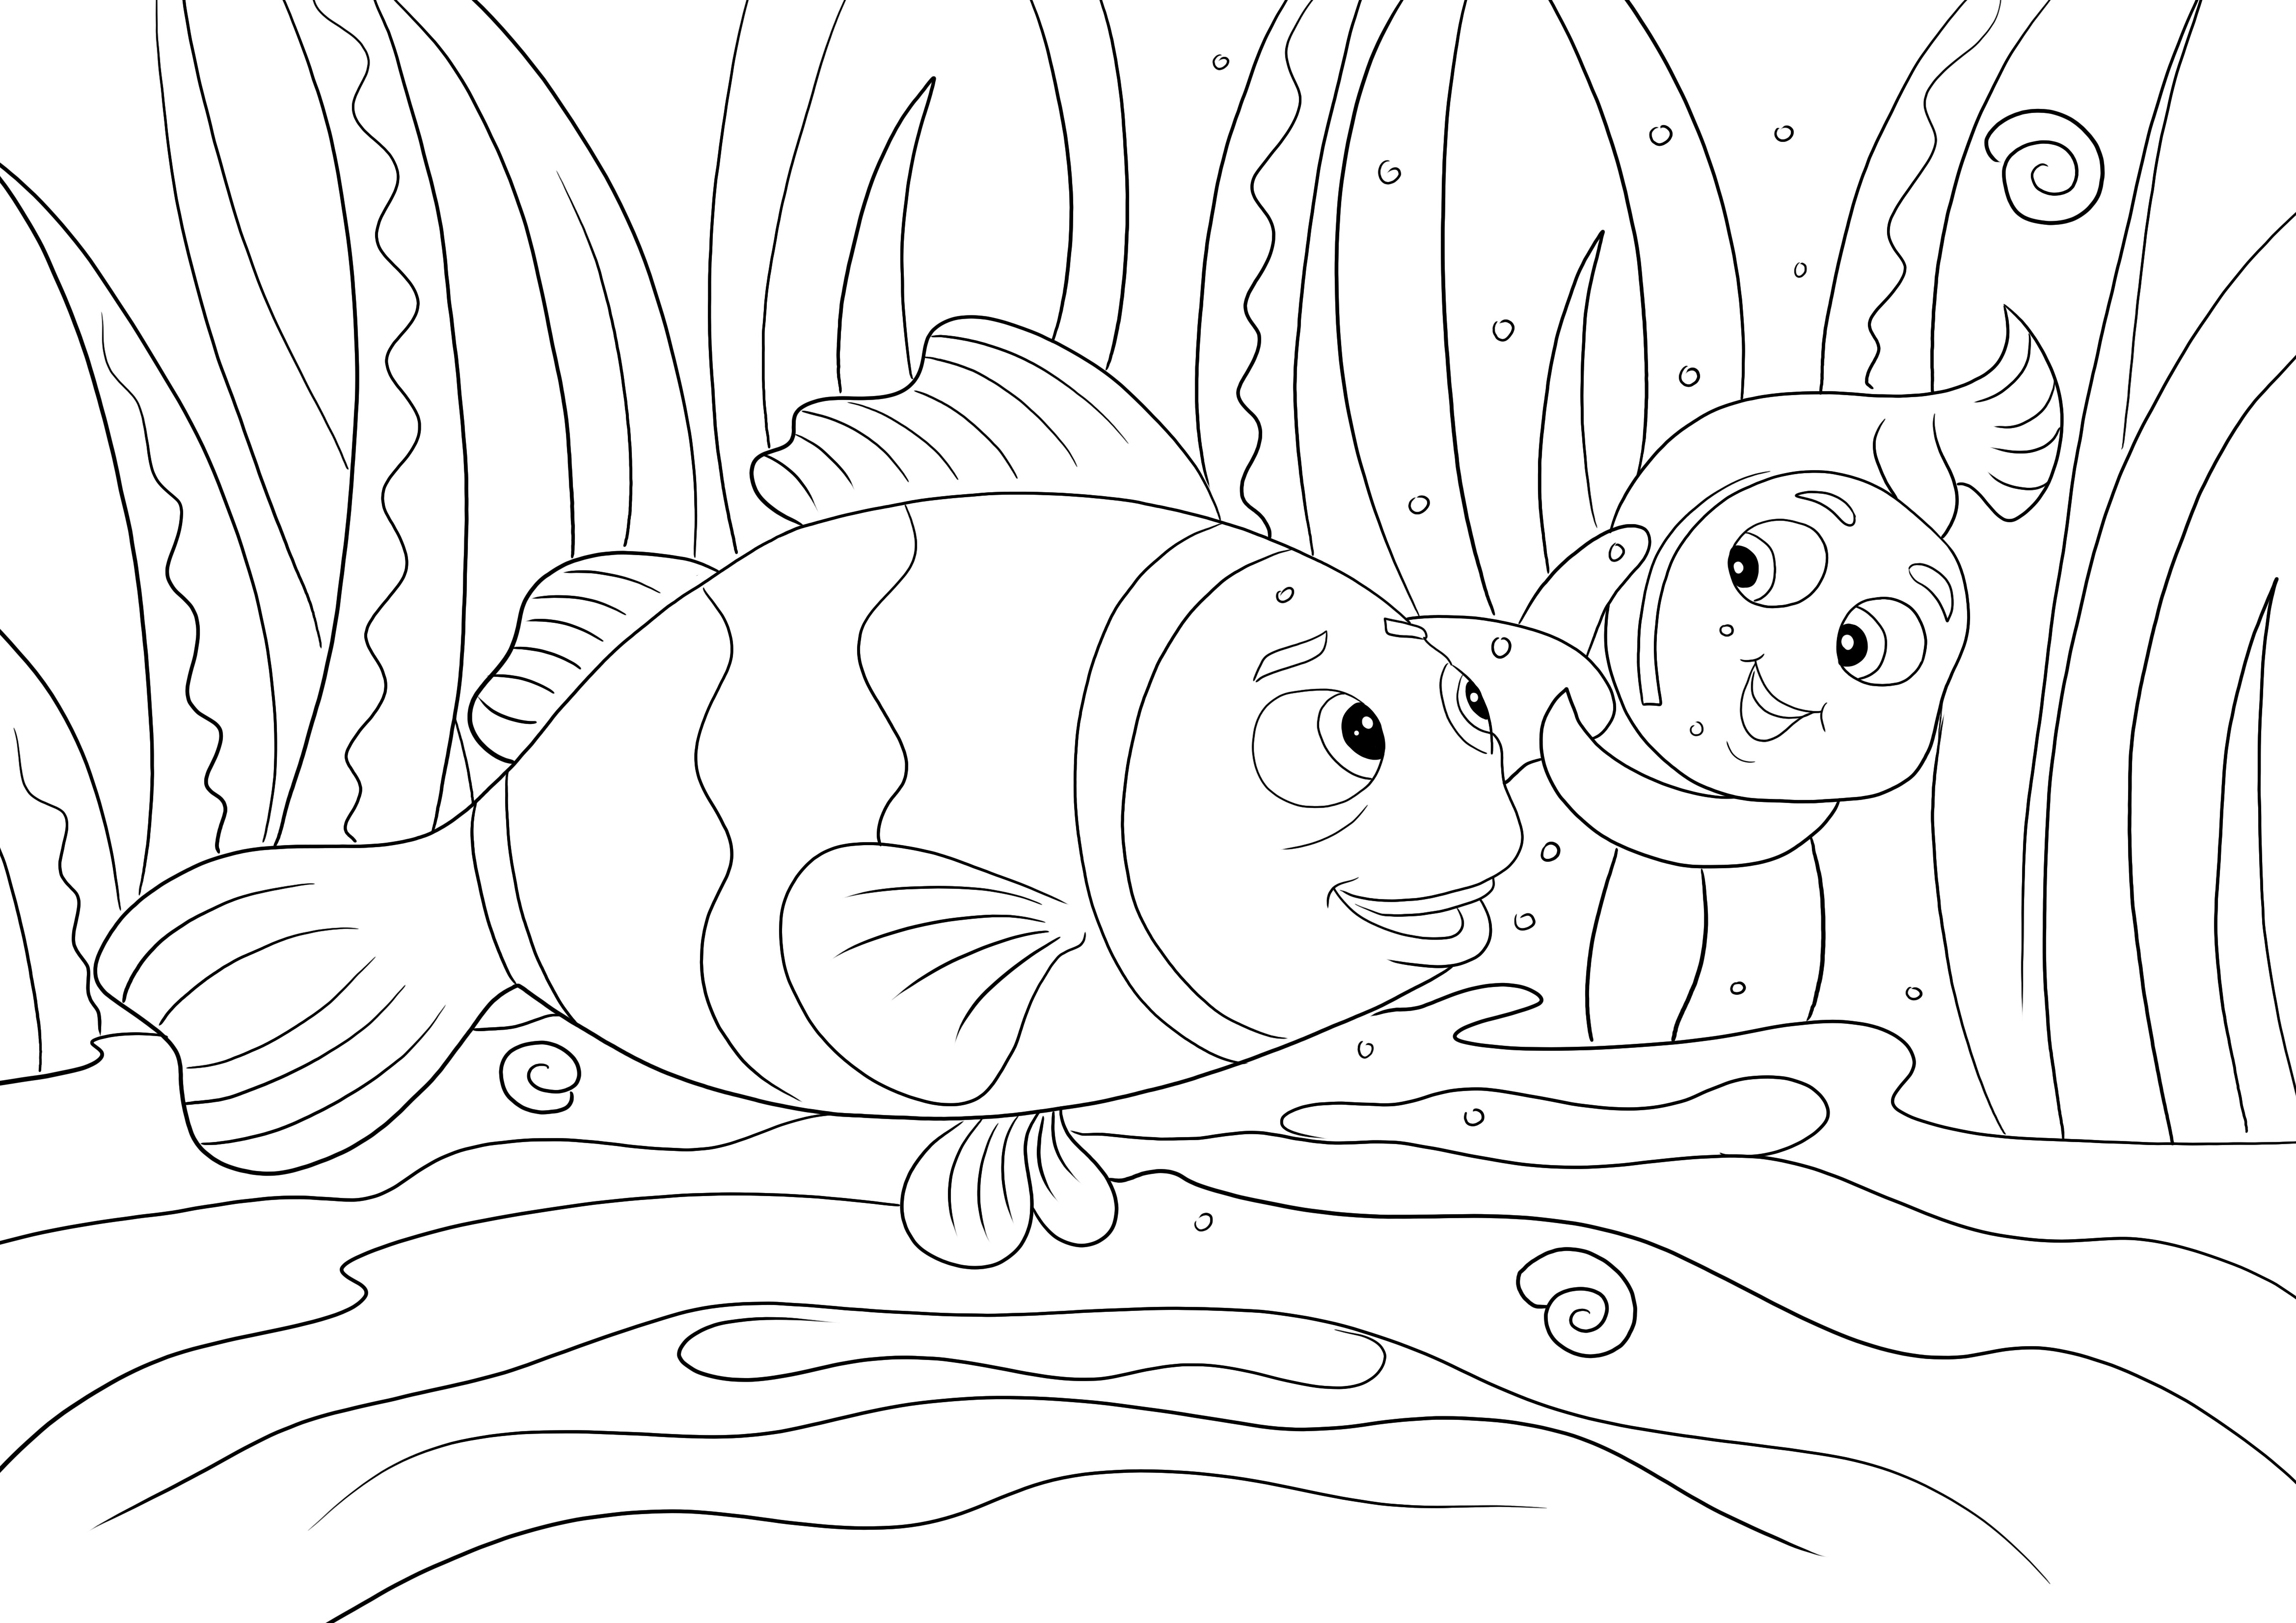 Nemo y Marylin nadando: una imagen fácil de imprimir y colorear